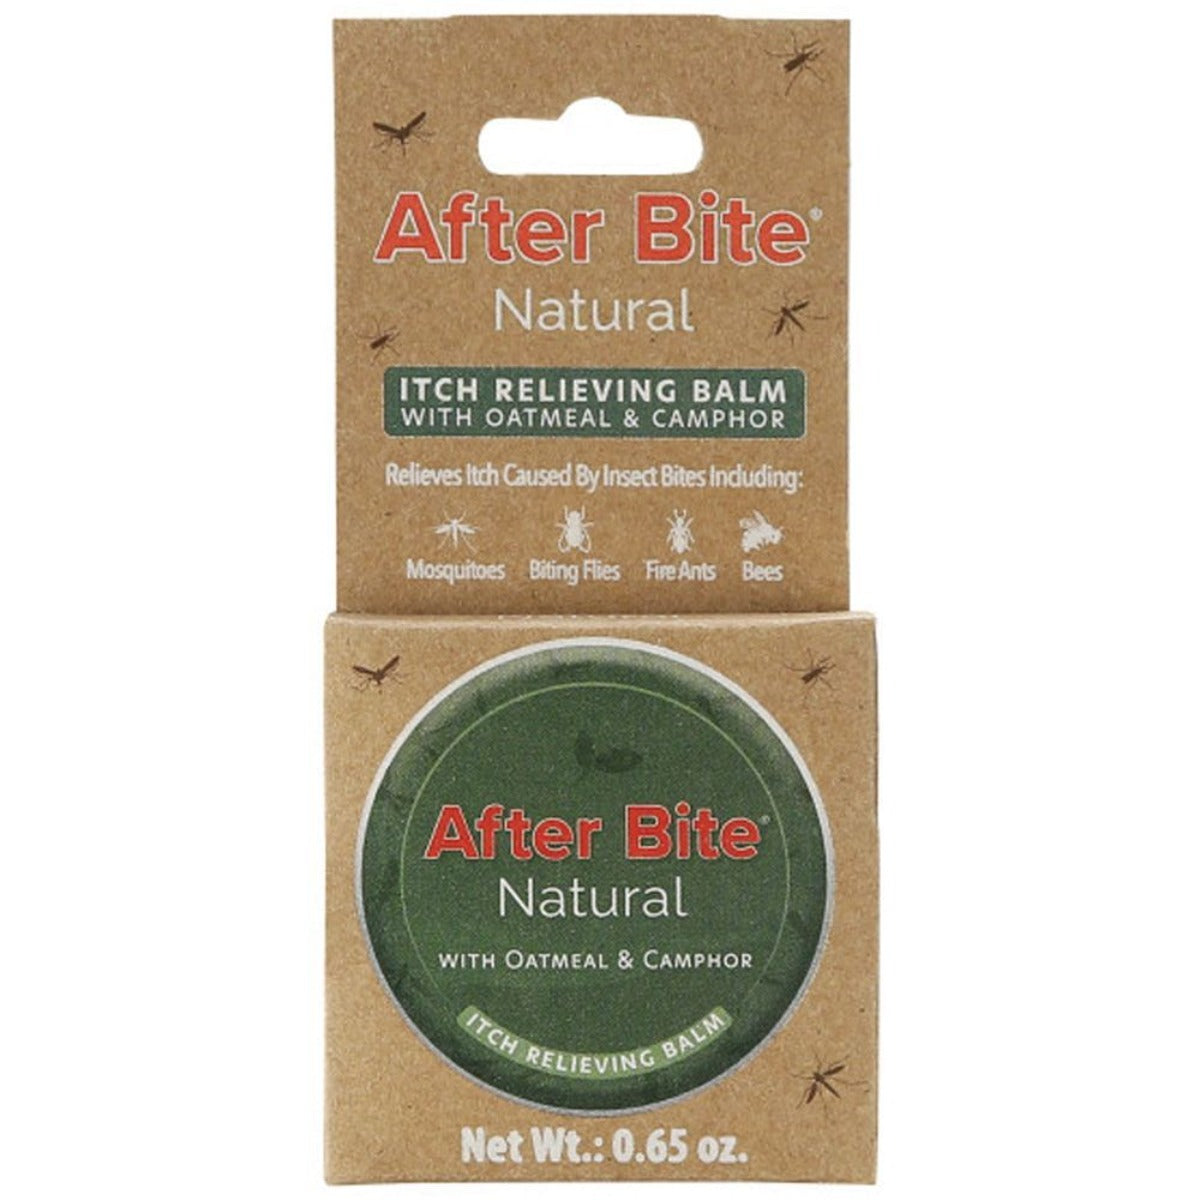 After Bite® Natural